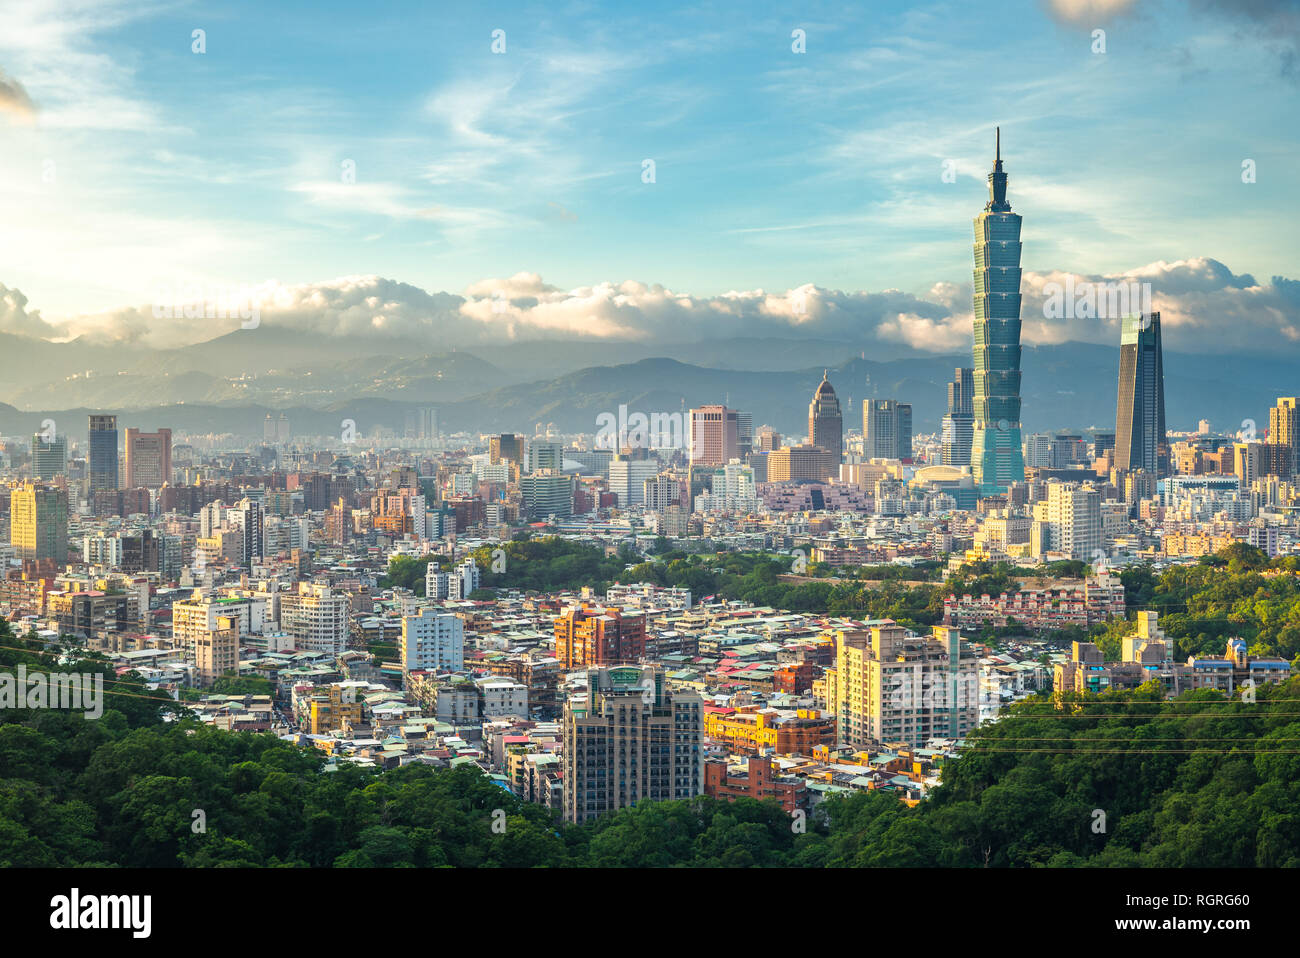 Panoramic view of Taipei City, taiwan Stock Photo